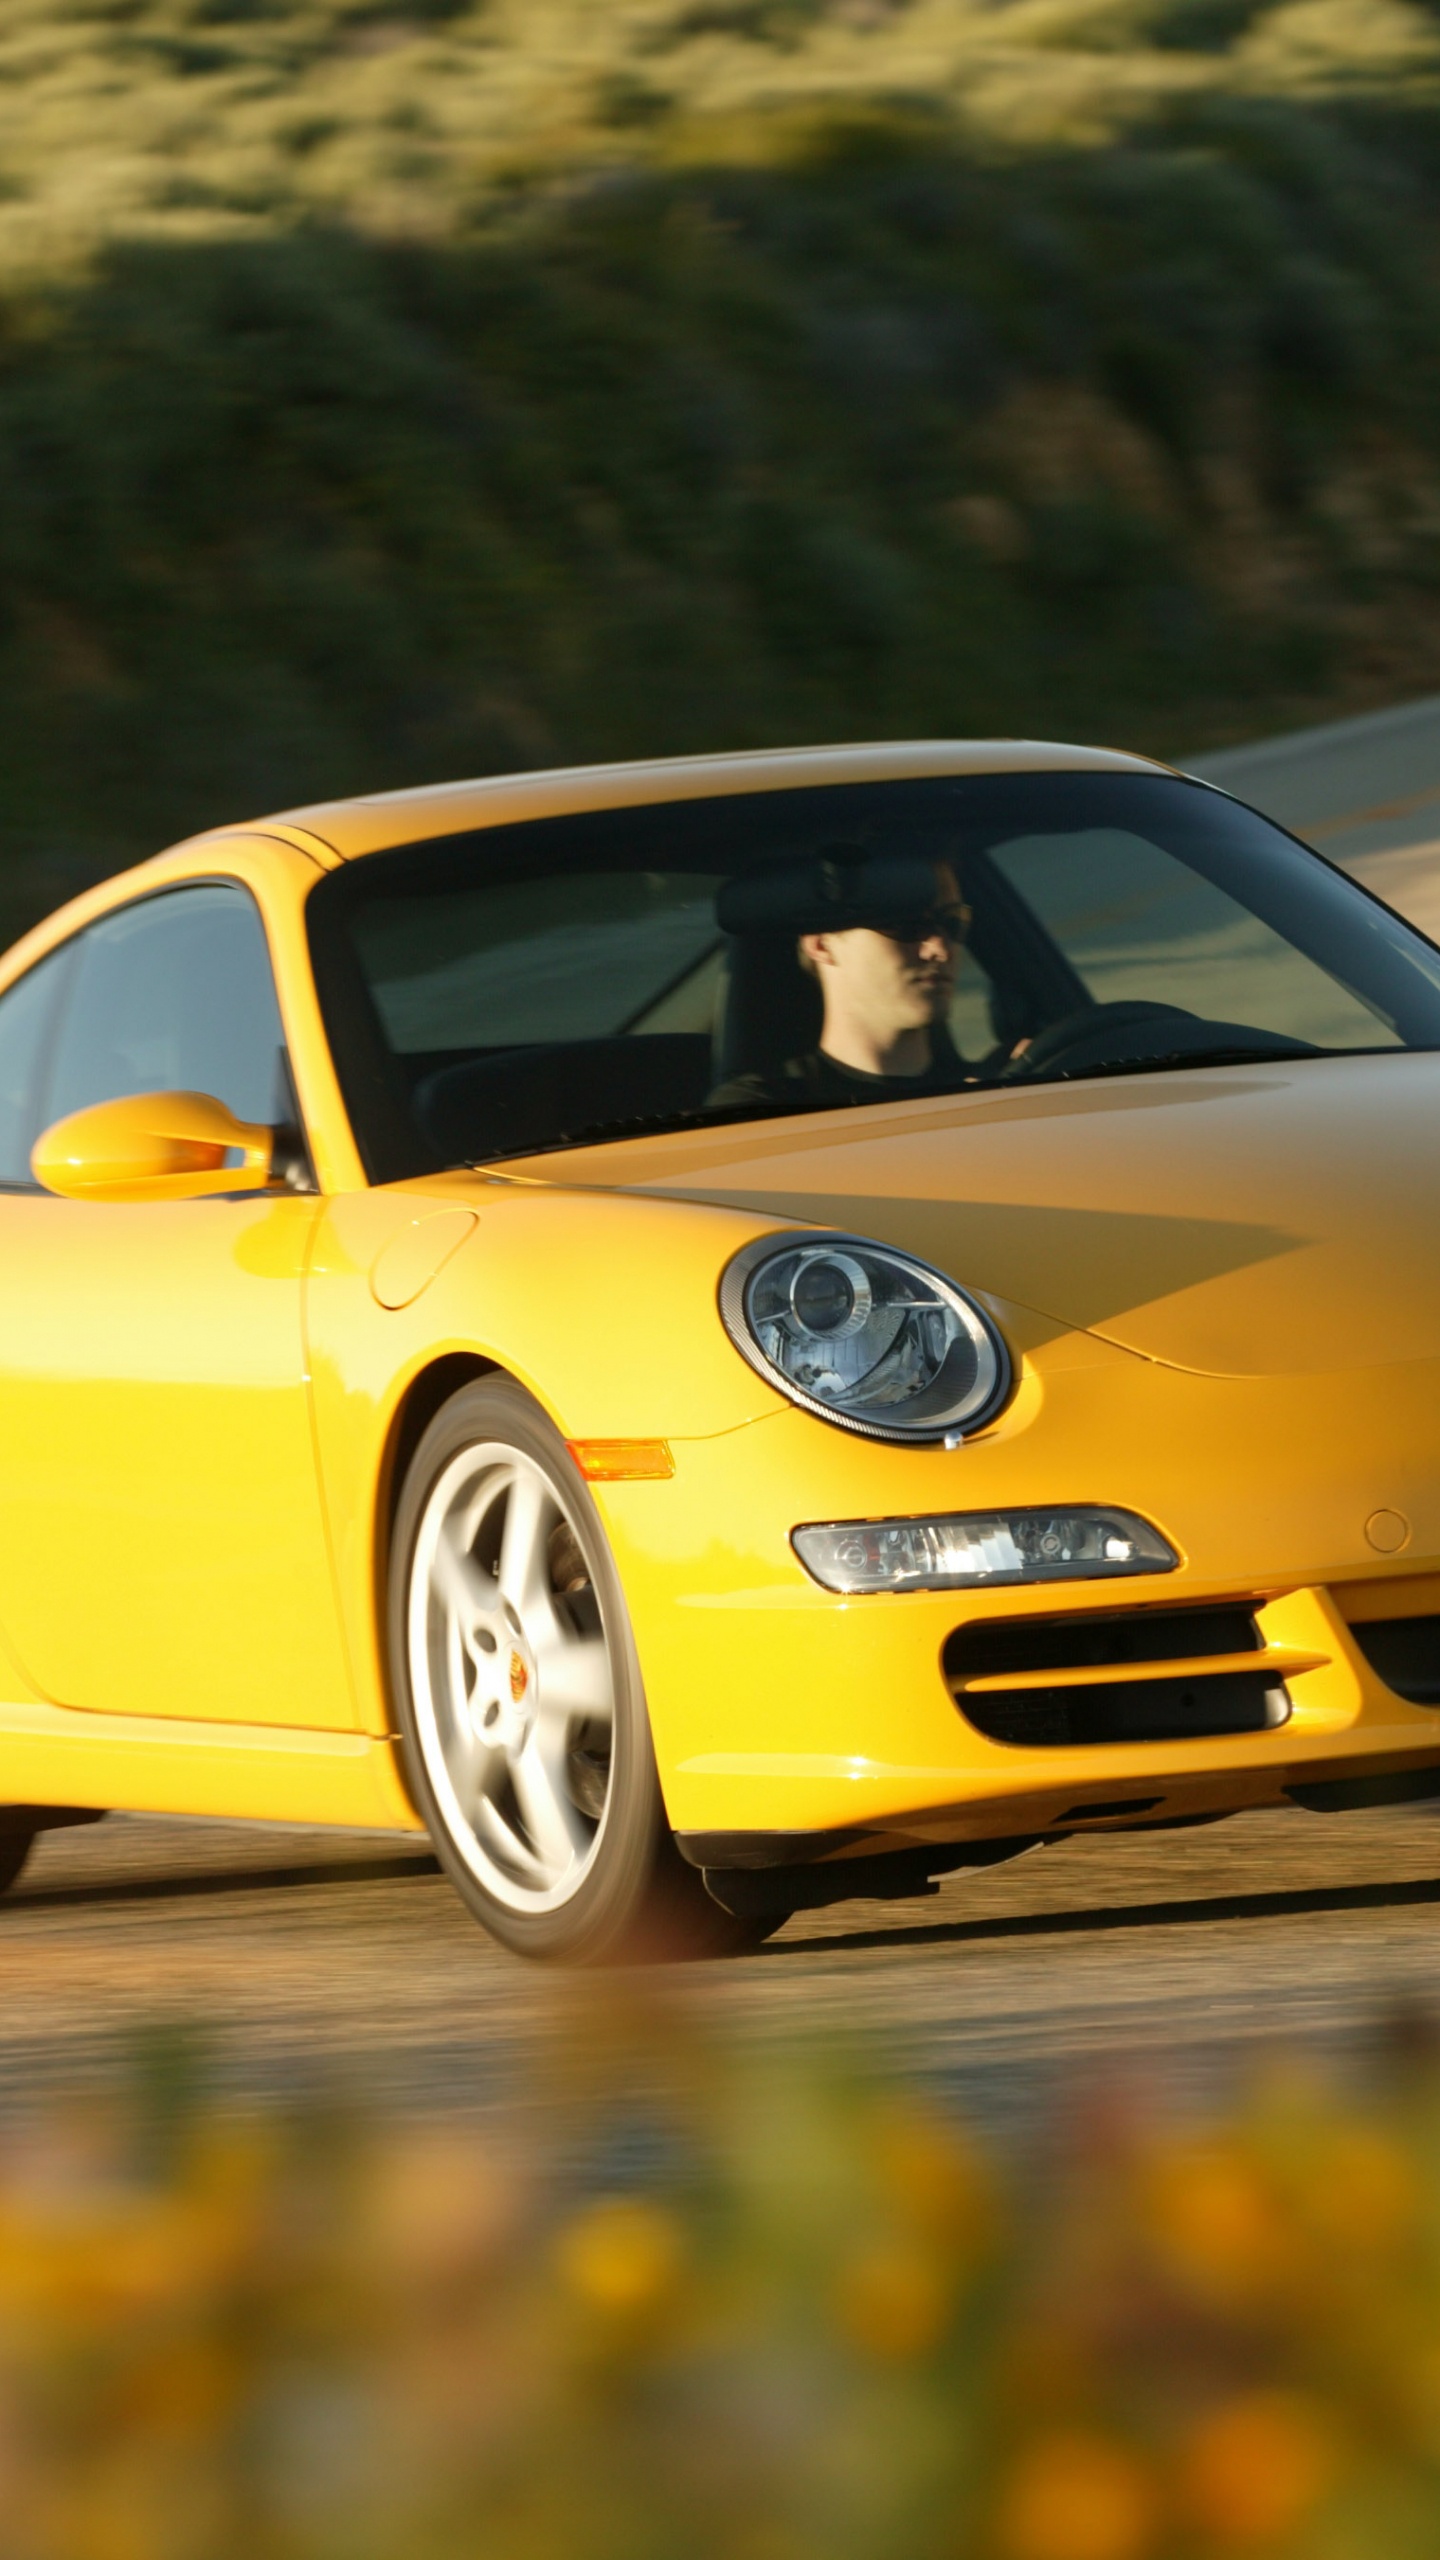 Porsche 911 Amarillo en la Carretera Durante el Día. Wallpaper in 1440x2560 Resolution